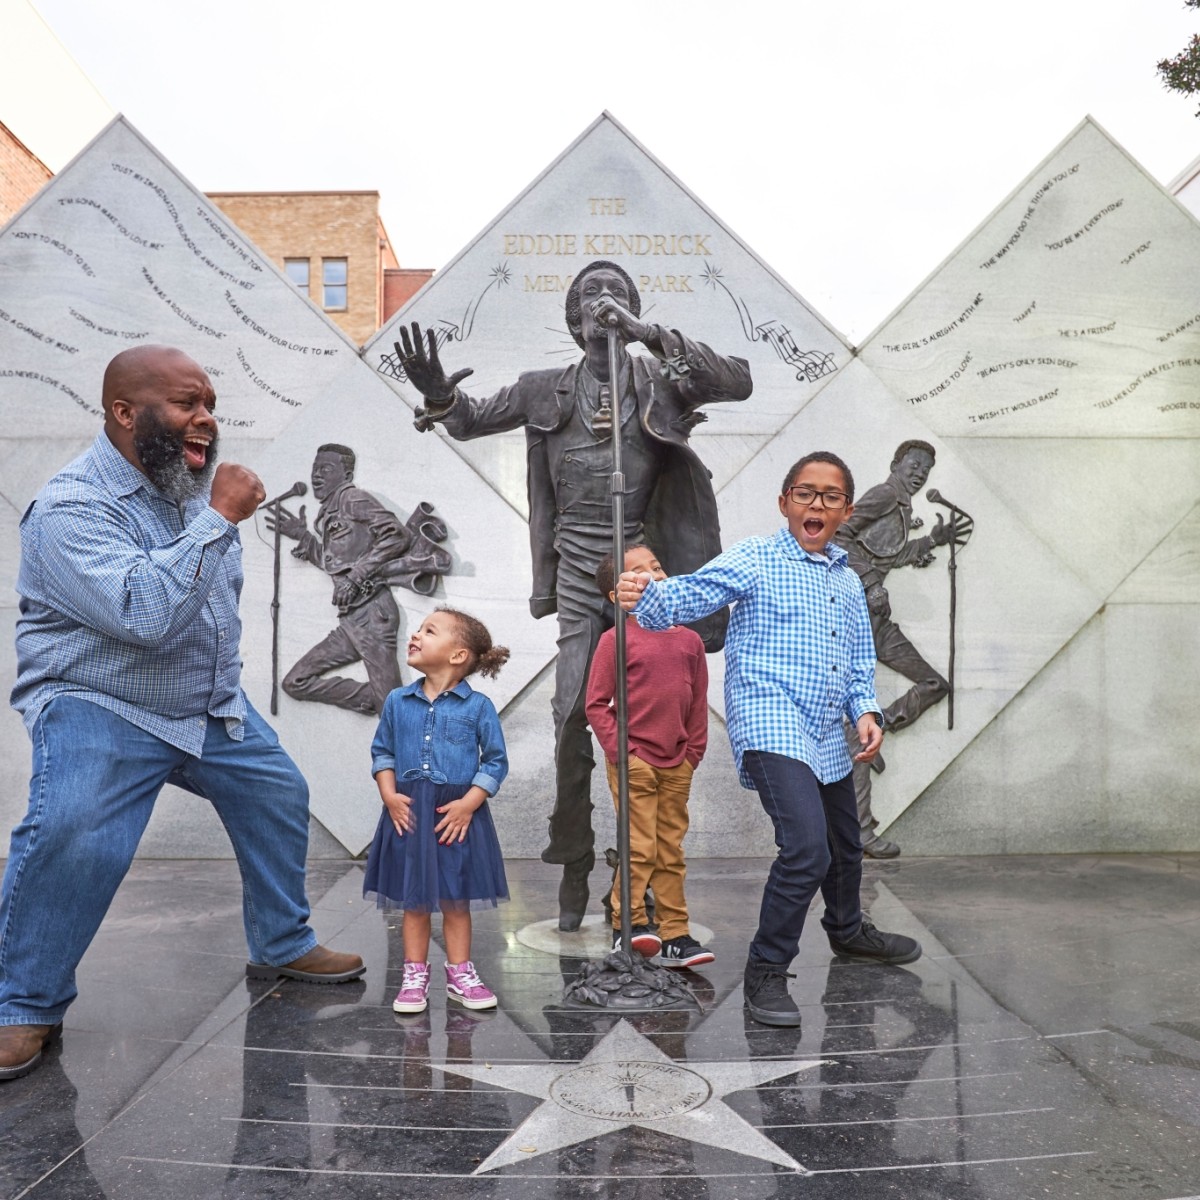 Un padre y sus tres hijos pequeños cantan y bailan mientras visitan el monumento a Eddie Kendrick; al fondo se ven estatuas de bronce del cantante.